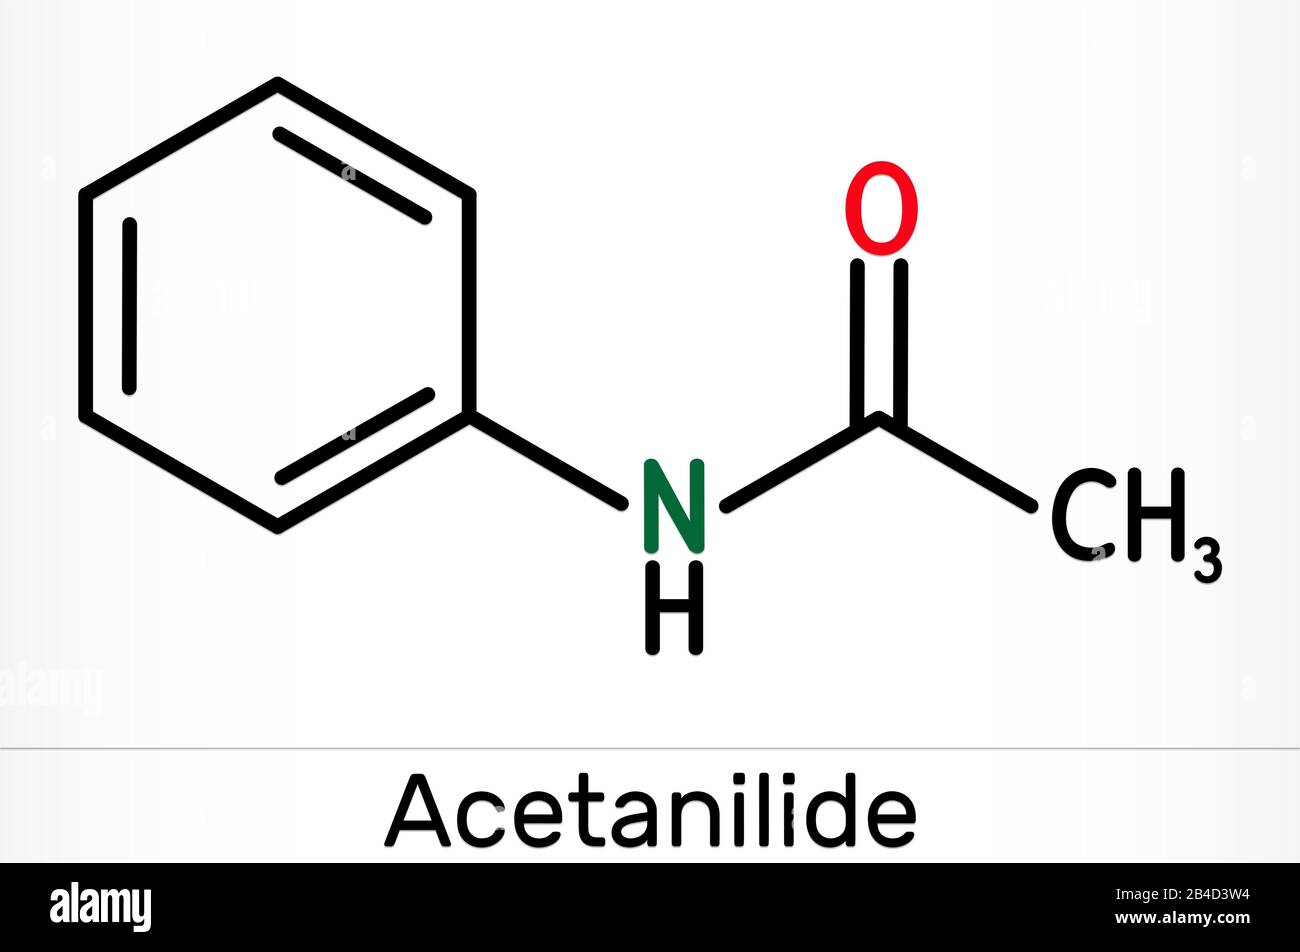 Acetanilida C8h9no Molécula Farmacológica Tiene Propiedades